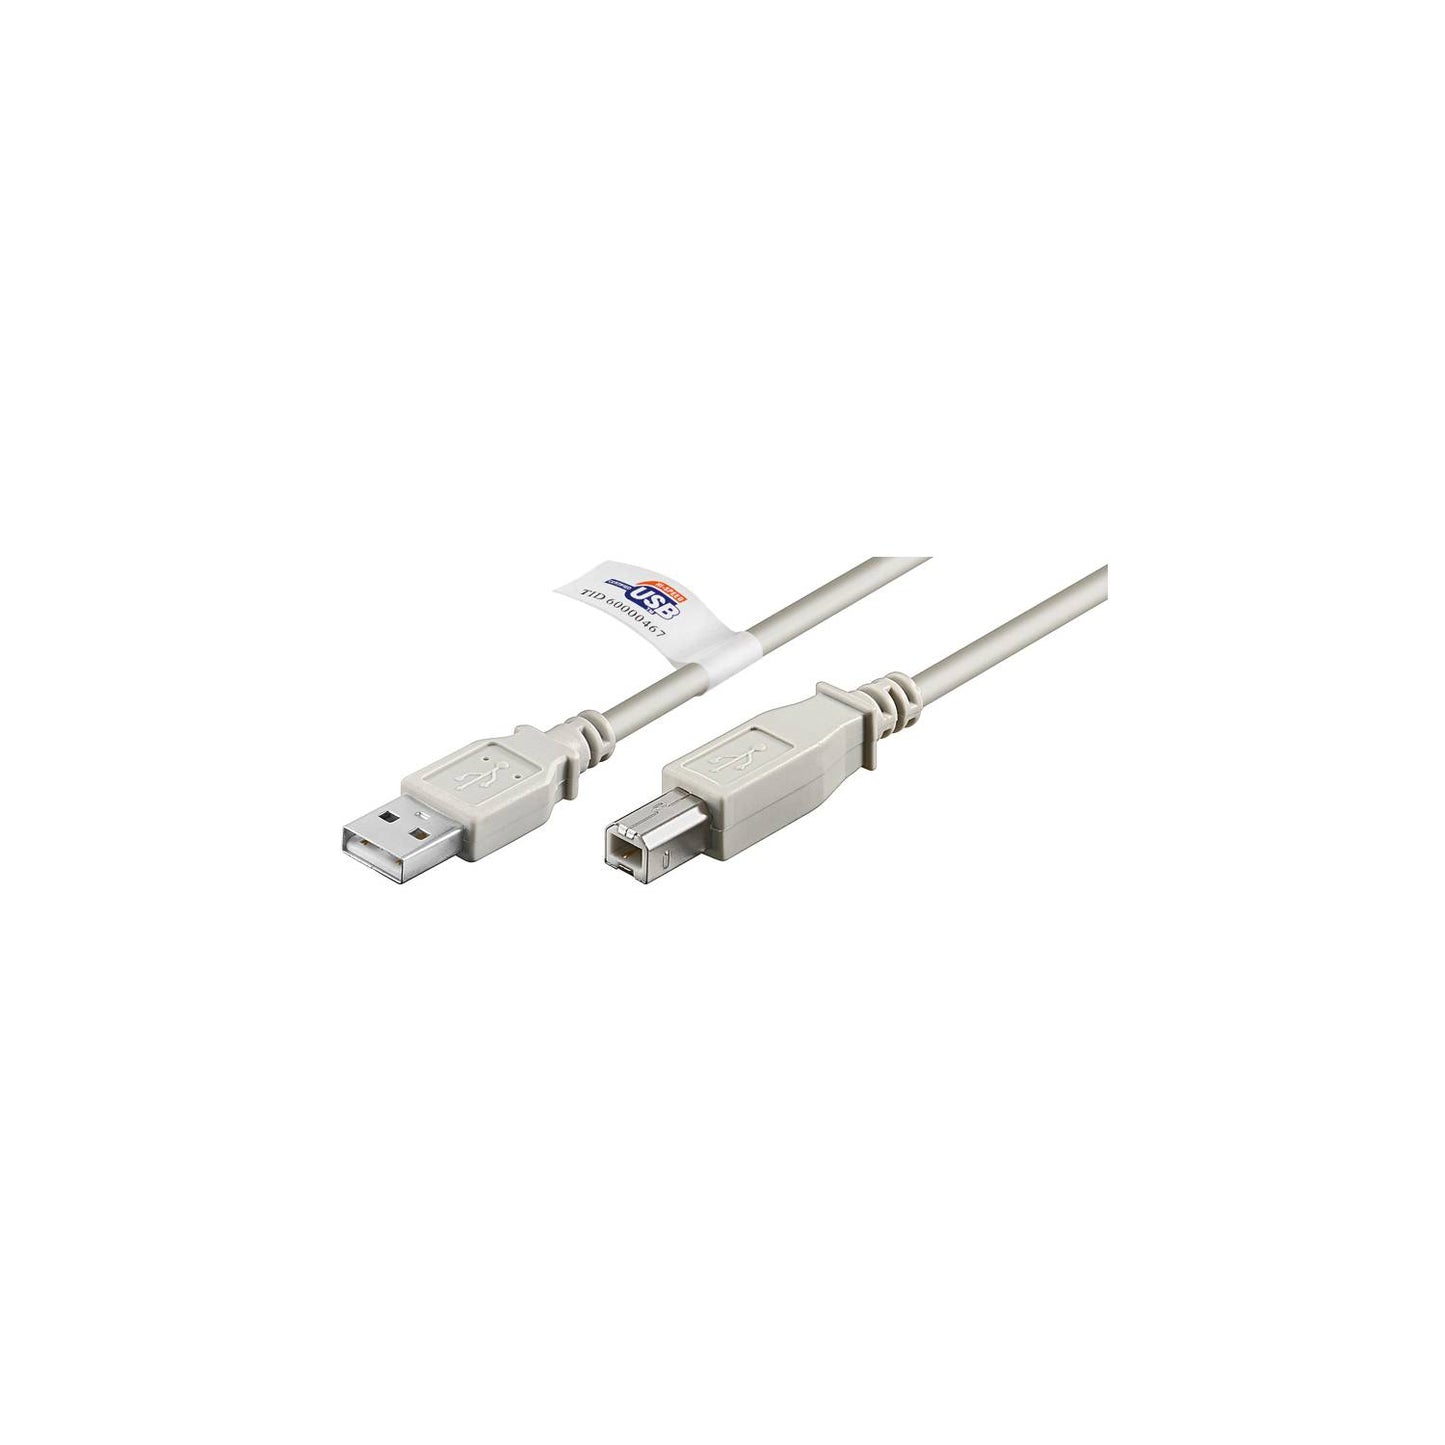 Anschlusskabel USB 2.0 A Stecker - B Stecker, zertifiziert, versch. Längen